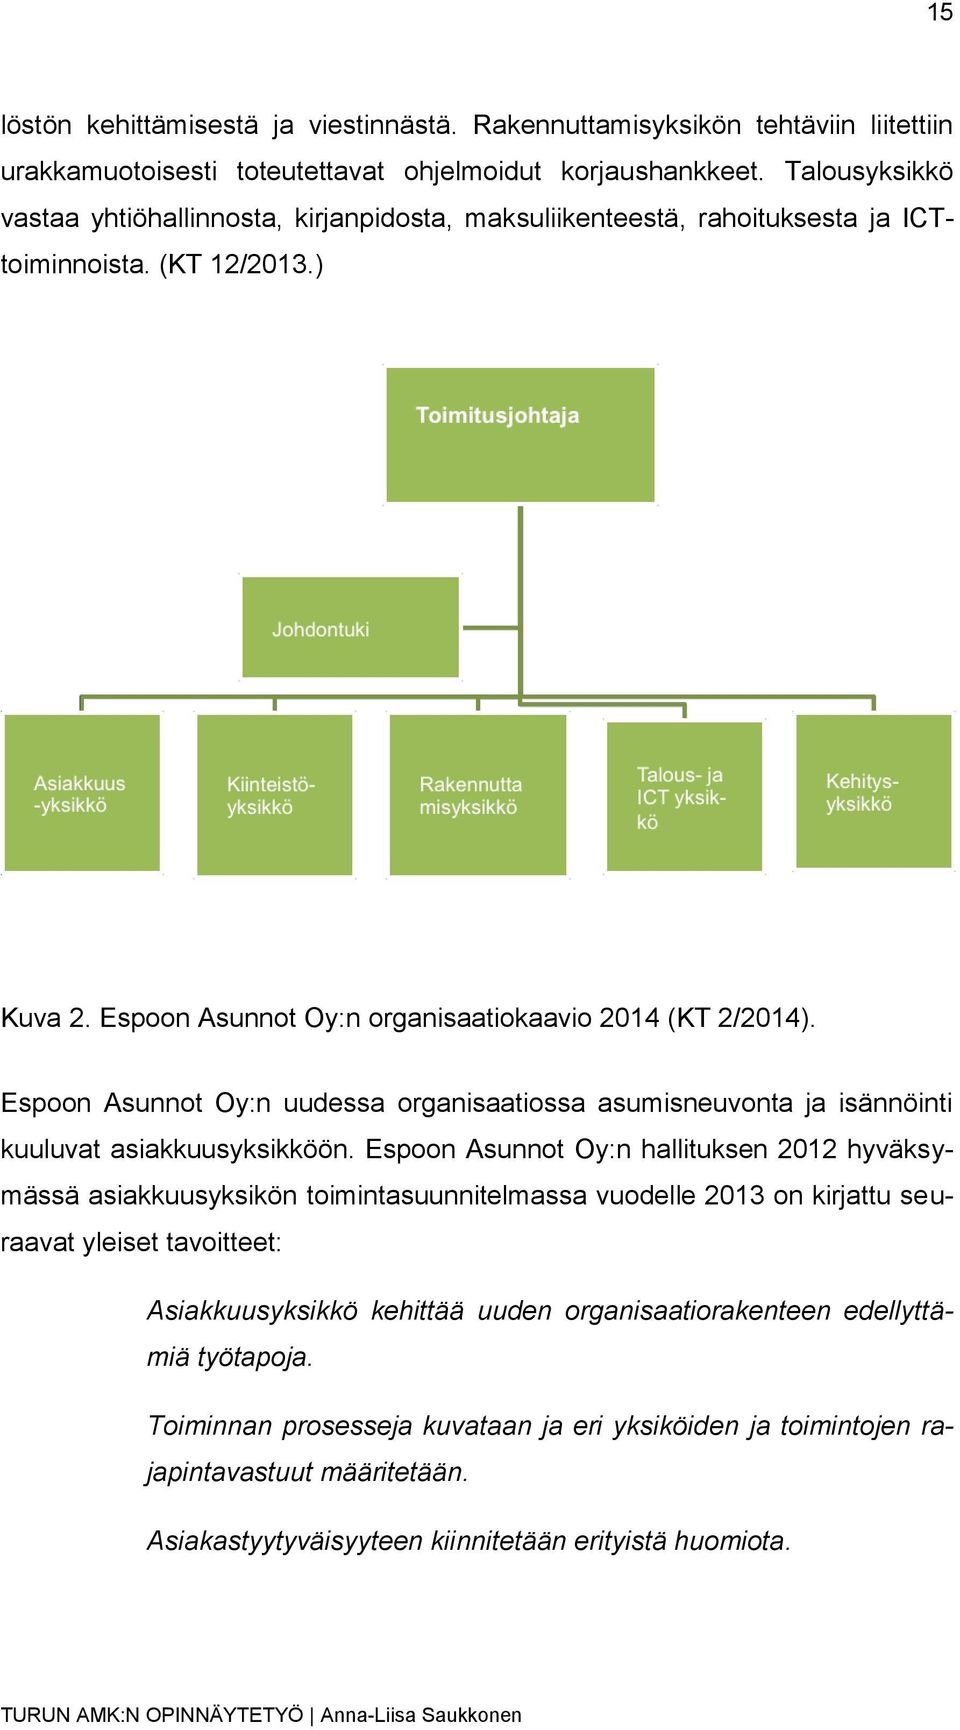 Espoon Asunnot Oy:n uudessa organisaatiossa asumisneuvonta ja isännöinti kuuluvat asiakkuusyksikköön.